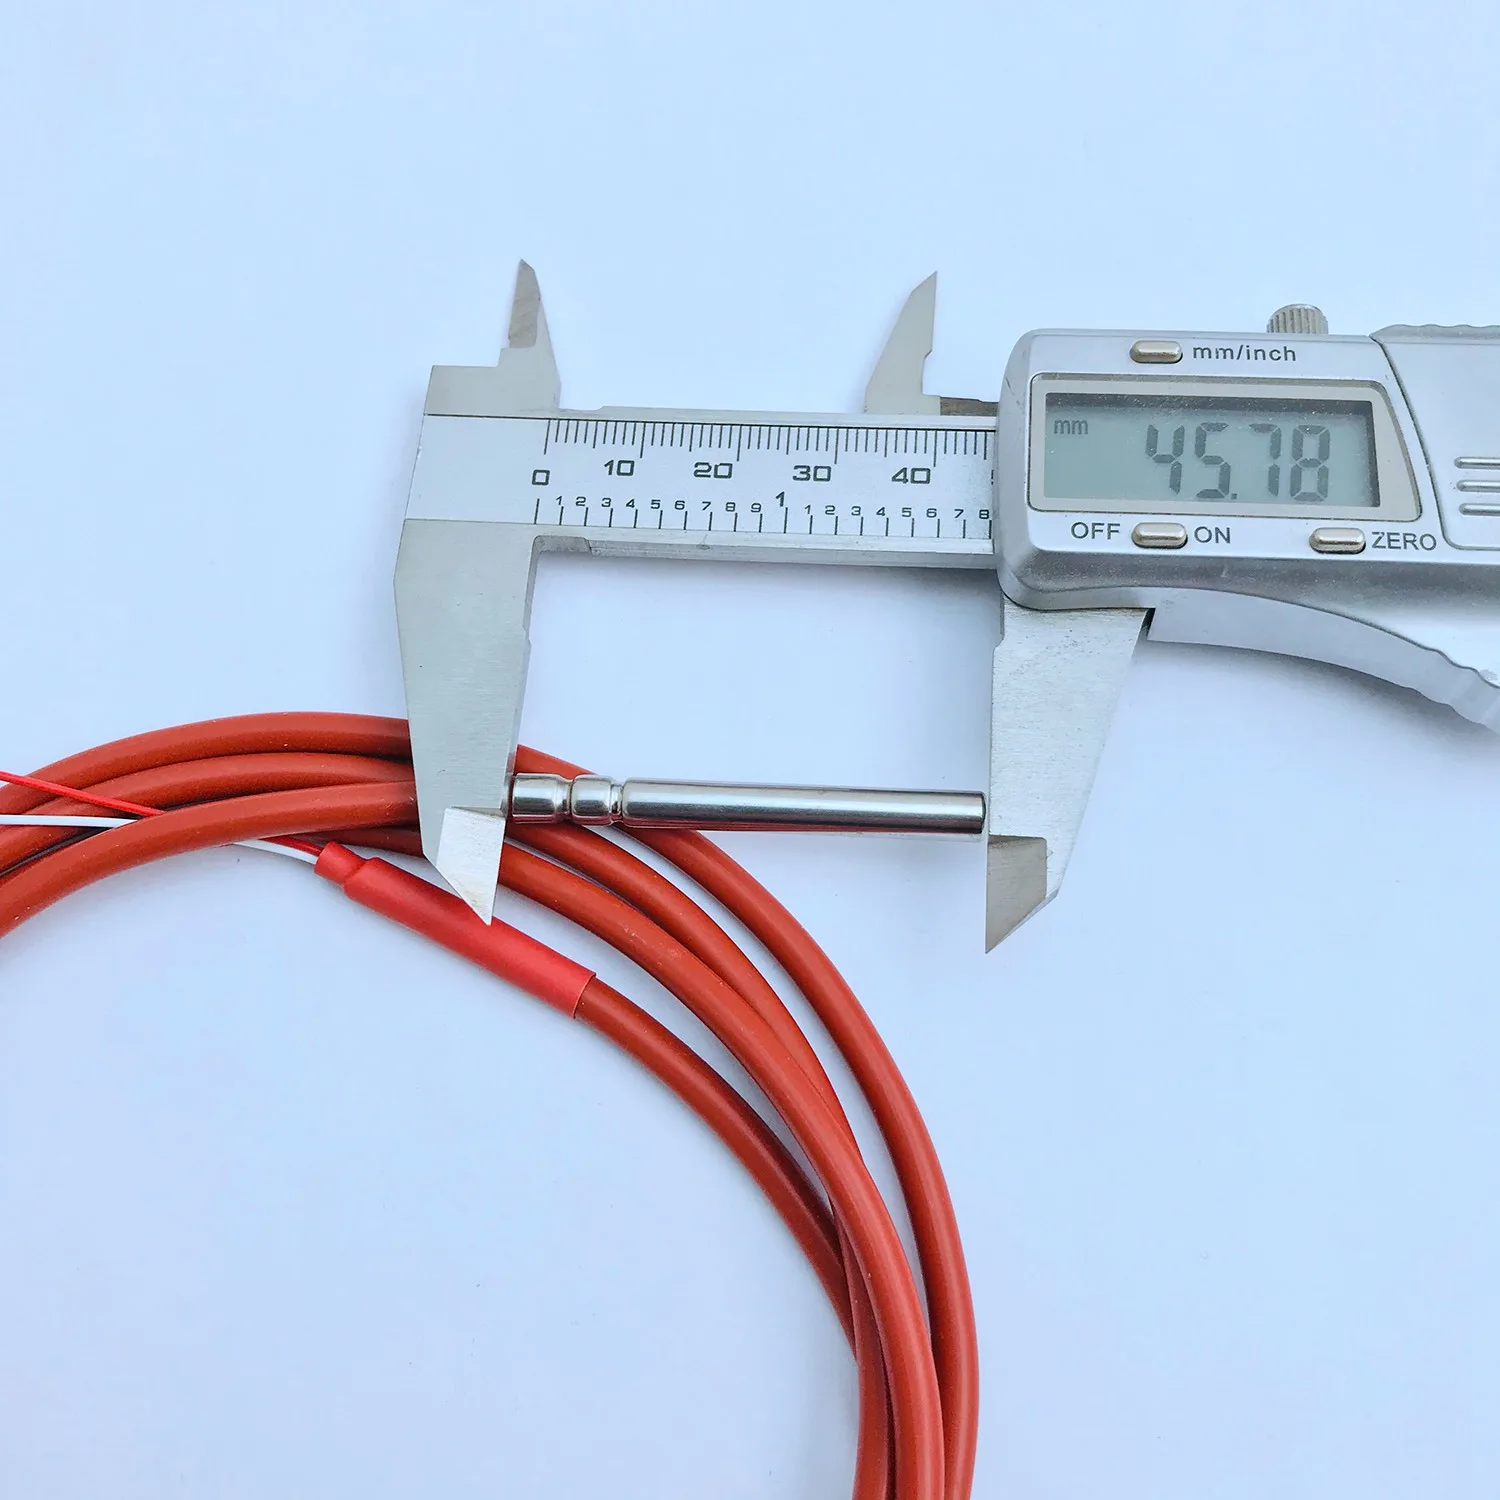 2-проводной датчик температуры PT1000, термистор, покрытый силиконовым гелем, 1,5-метровый зонд 45 мм x 5 мм -50-180 градусов по Цельсию RTDs